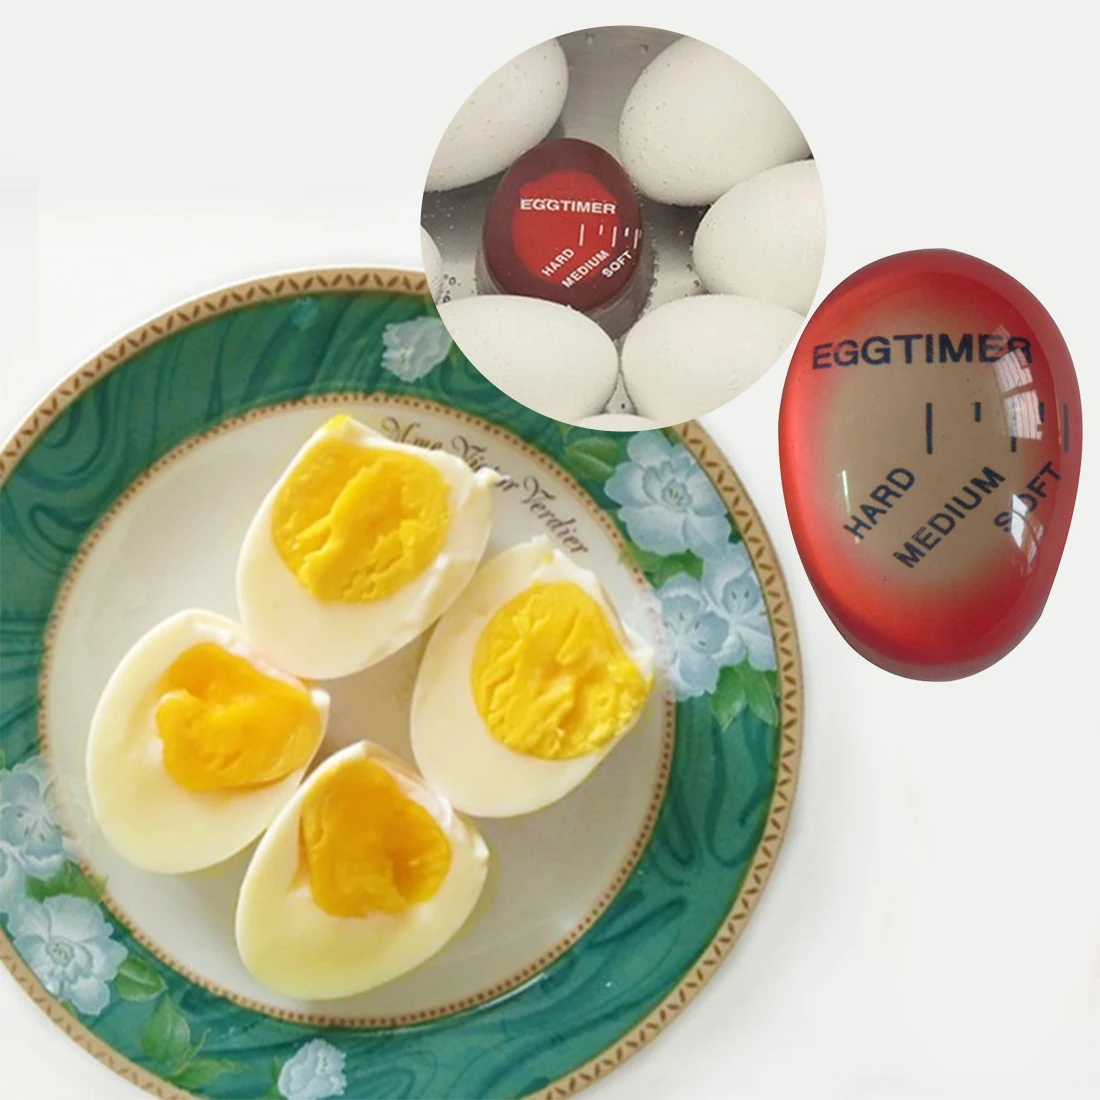 1 шт. яйцо идеально Цвет изменение таймер Yummy мягкий яйца вкрутую Пособия по кулинарии Кухня экологически чистые смолы яиц таймер